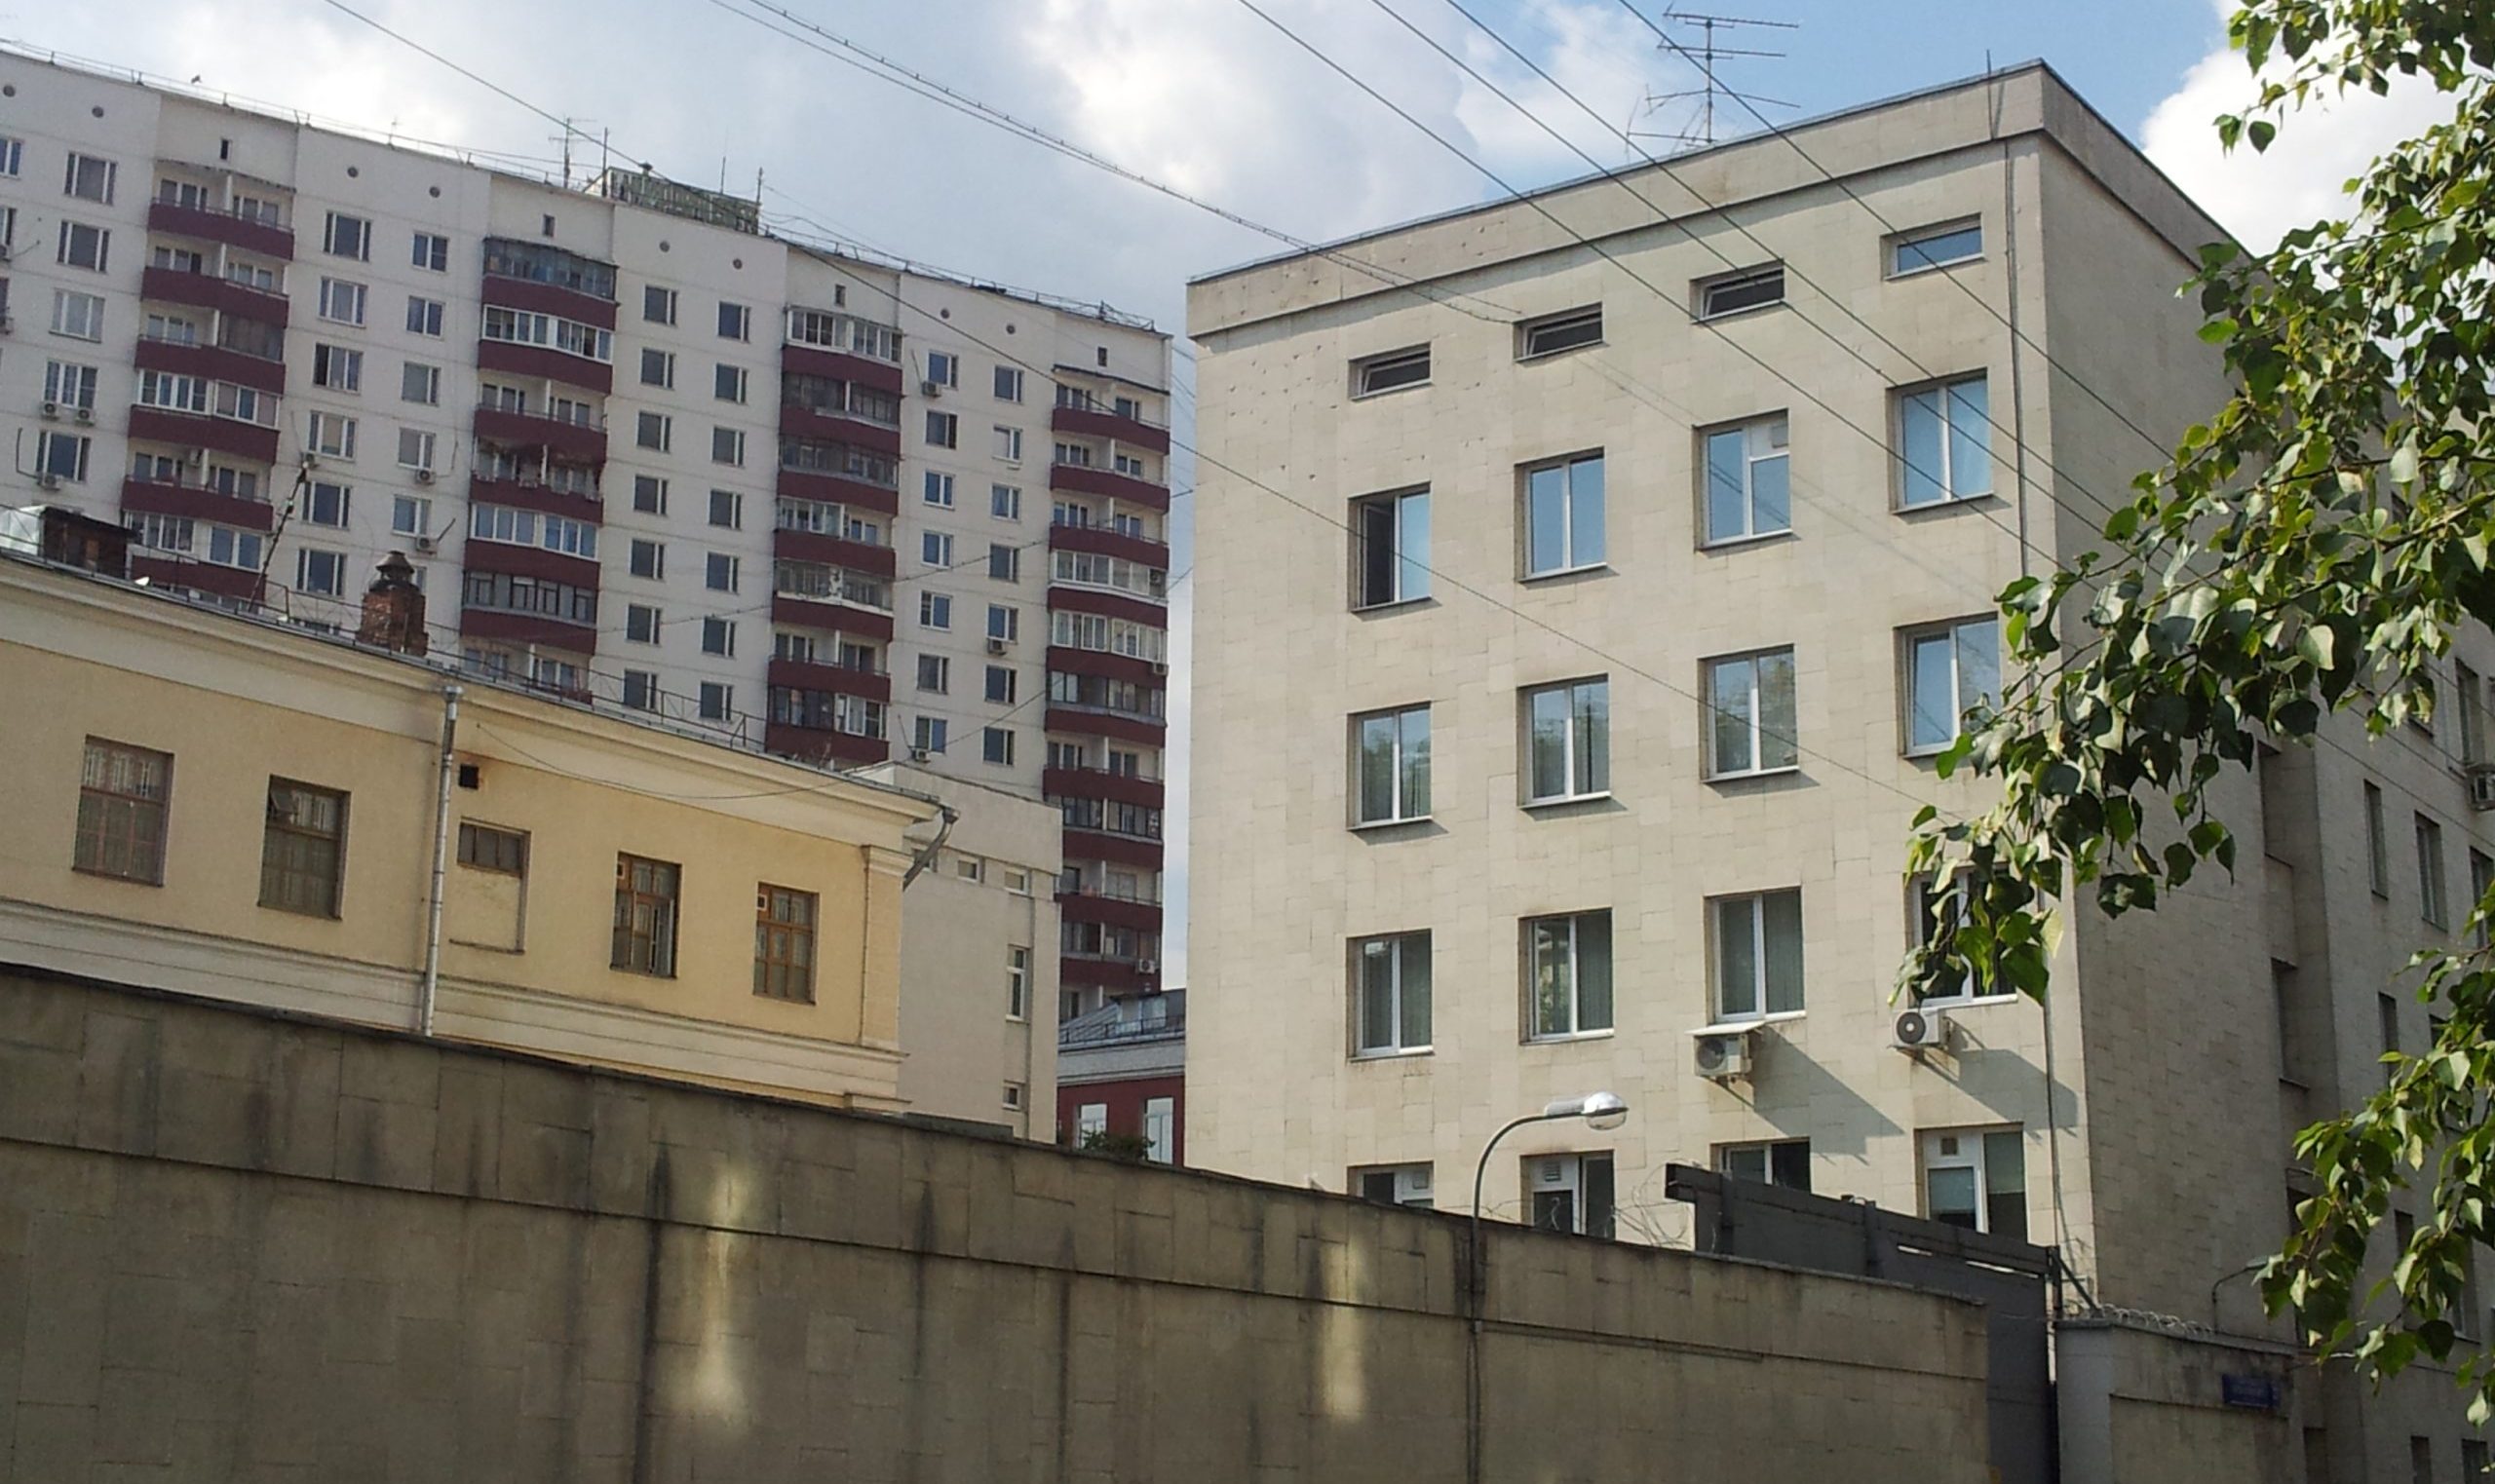 Bakom en hög betongmur skymtar en anonym grå byggnad i sex våningar.